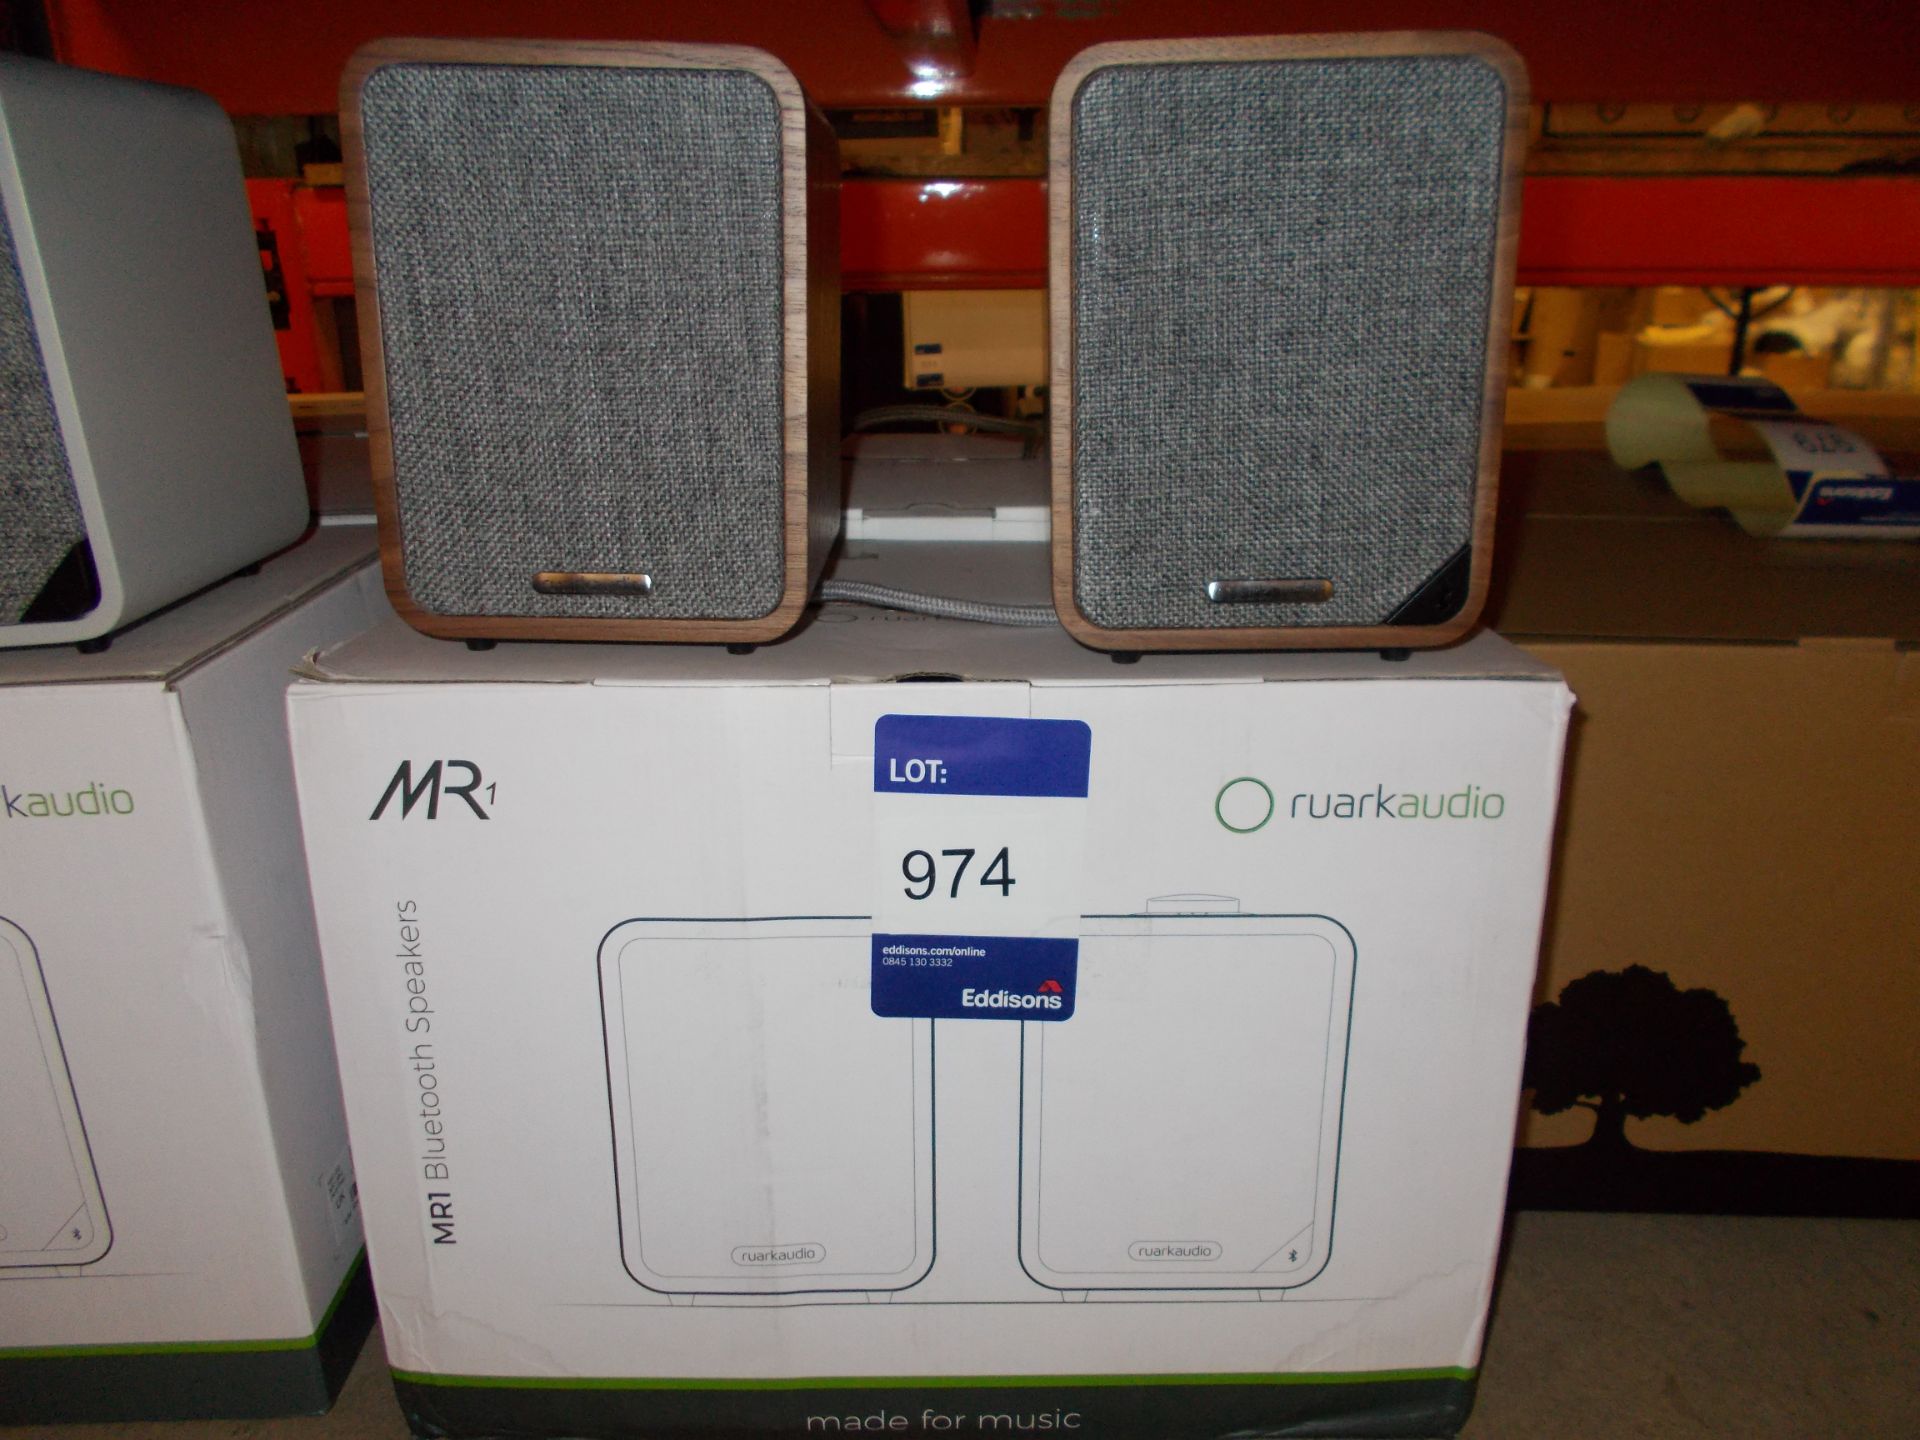 Pair of Ruark MR1 Blue Tooth Speakers, Rich Walnut (on display) – RRP £329